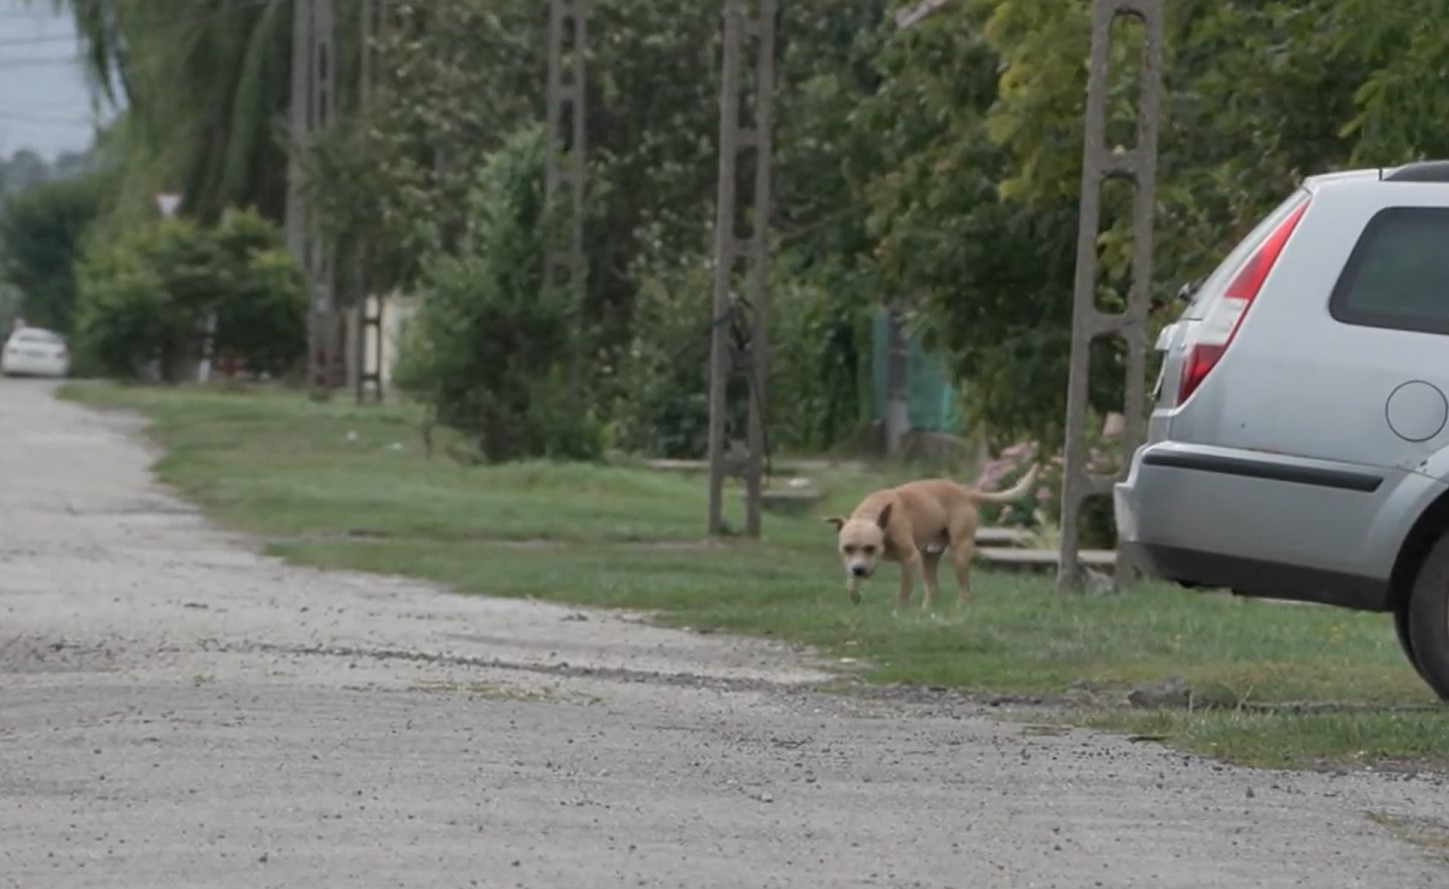 Rollerező kisgyermekre támadt egy megvadult kutya Borsodban – videó